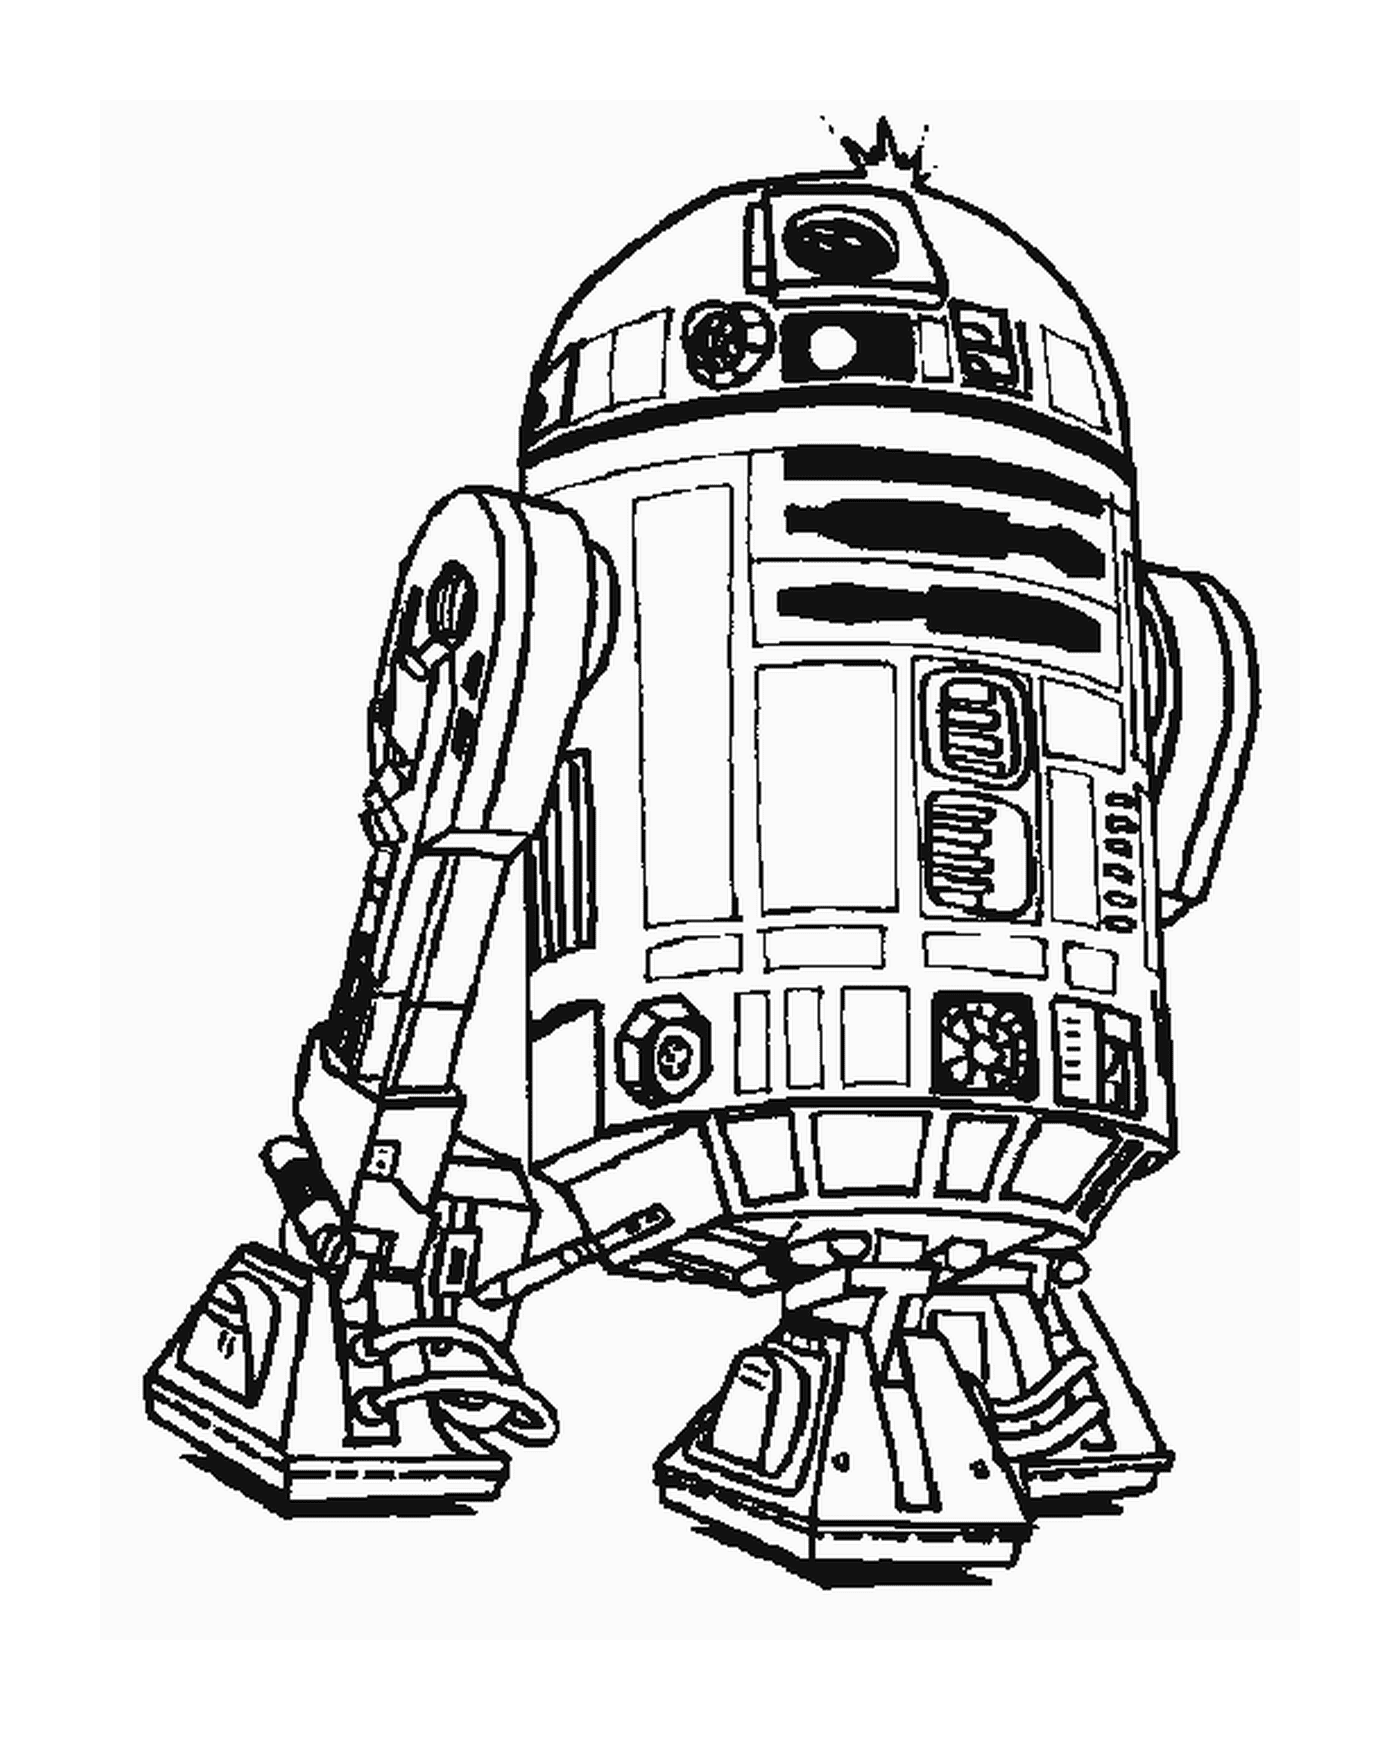  Disegno di un robot R2-D2 